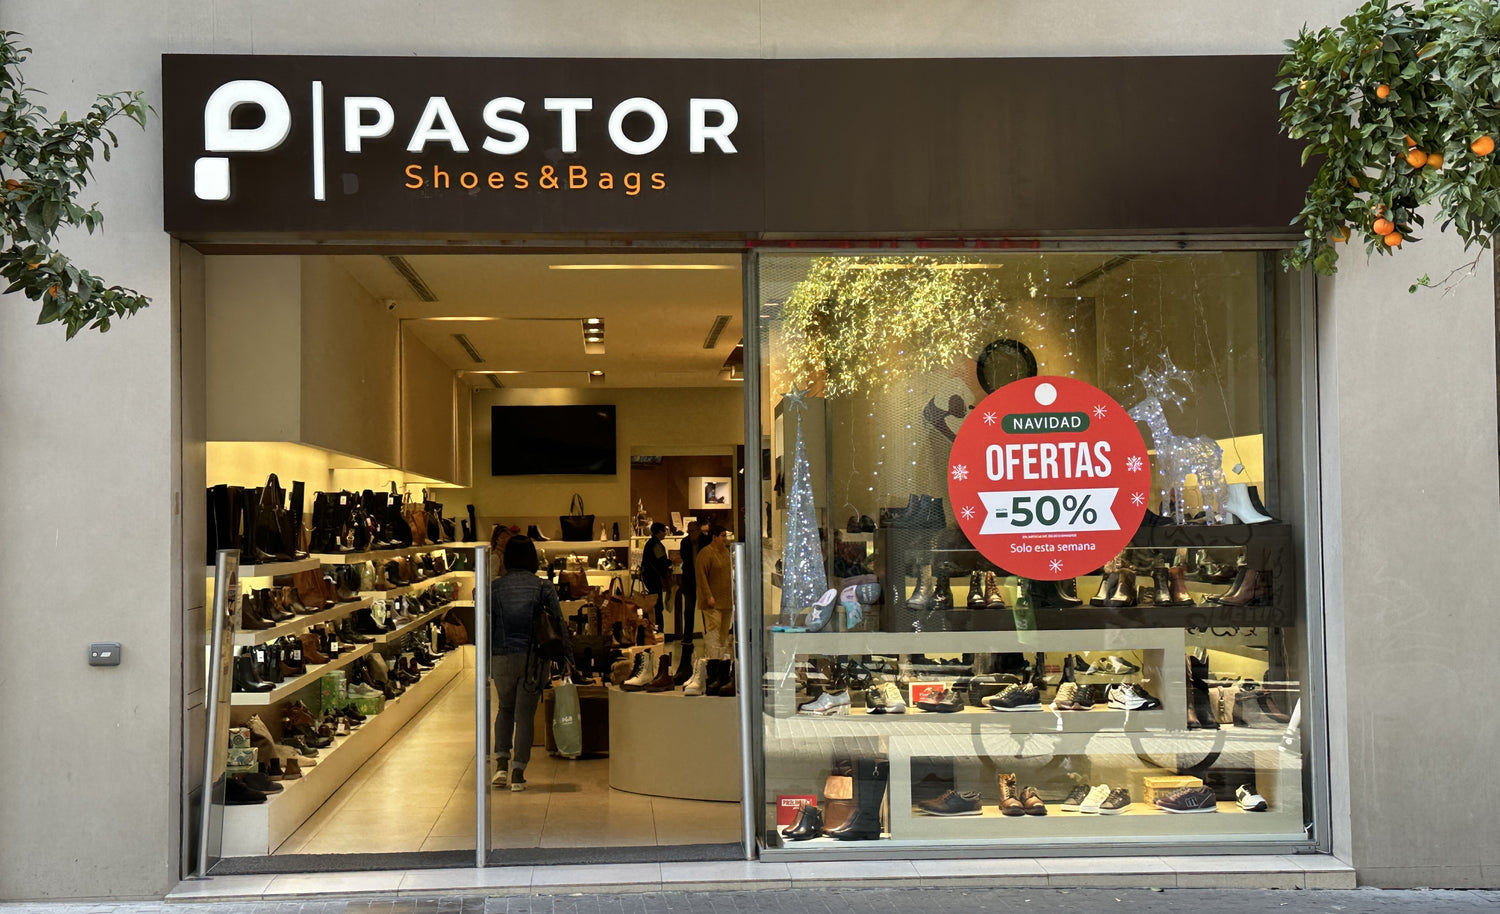 Zapatos Pastor - Zapatos y Bolsos en Valencia – zapatospastor